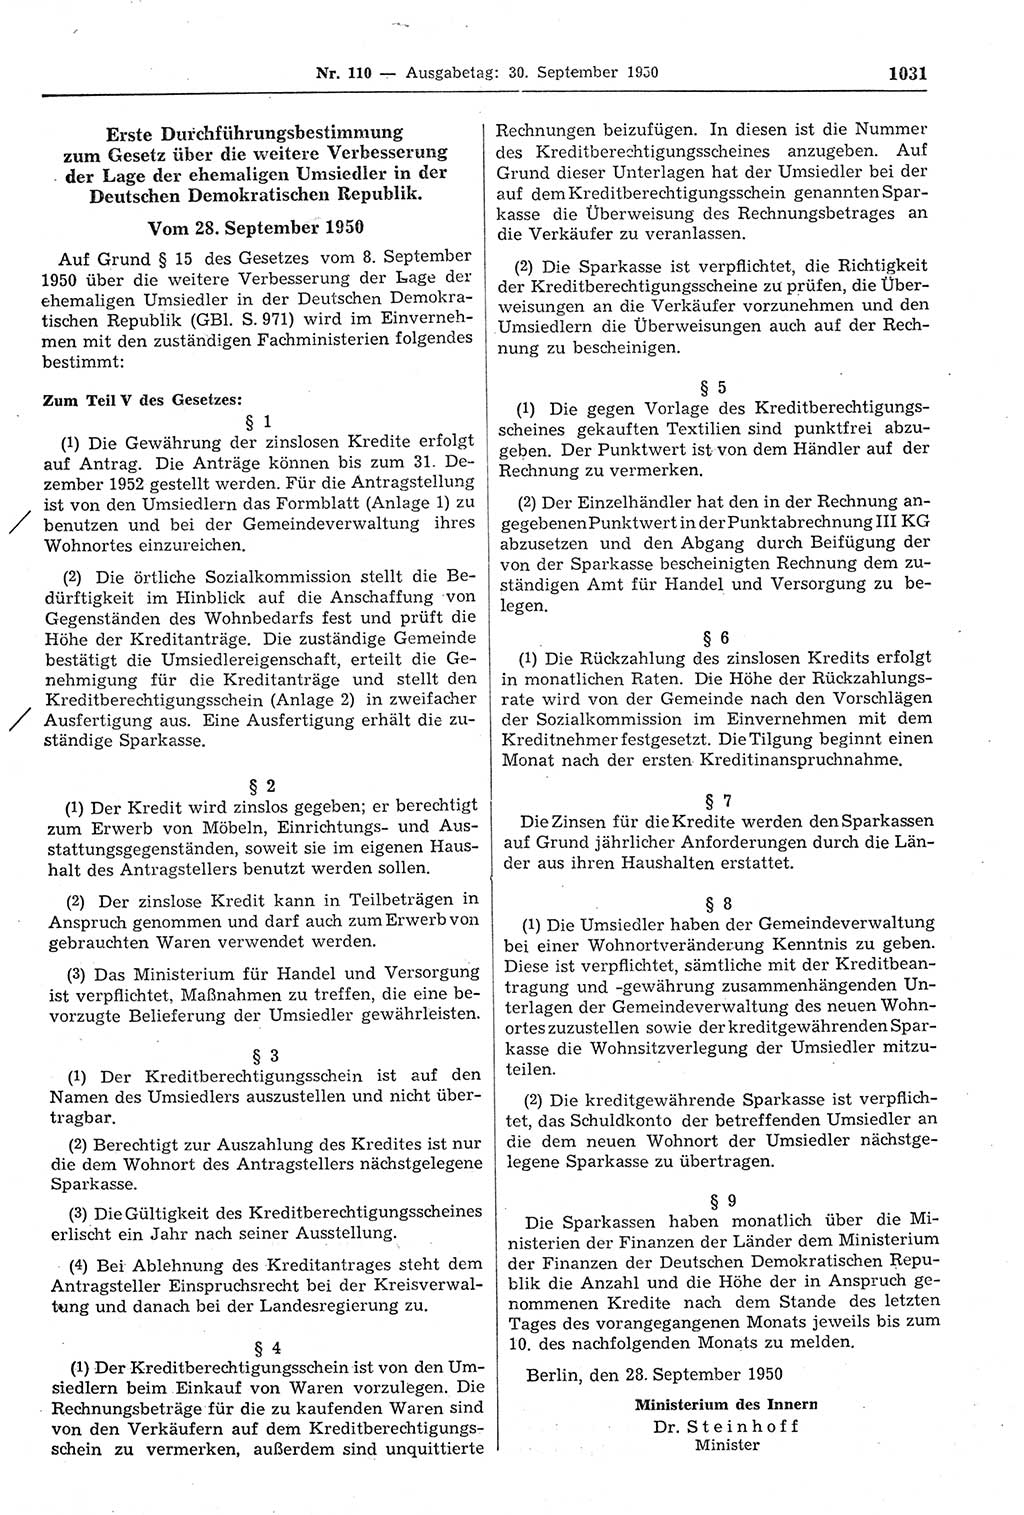 Gesetzblatt (GBl.) der Deutschen Demokratischen Republik (DDR) 1950, Seite 1031 (GBl. DDR 1950, S. 1031)